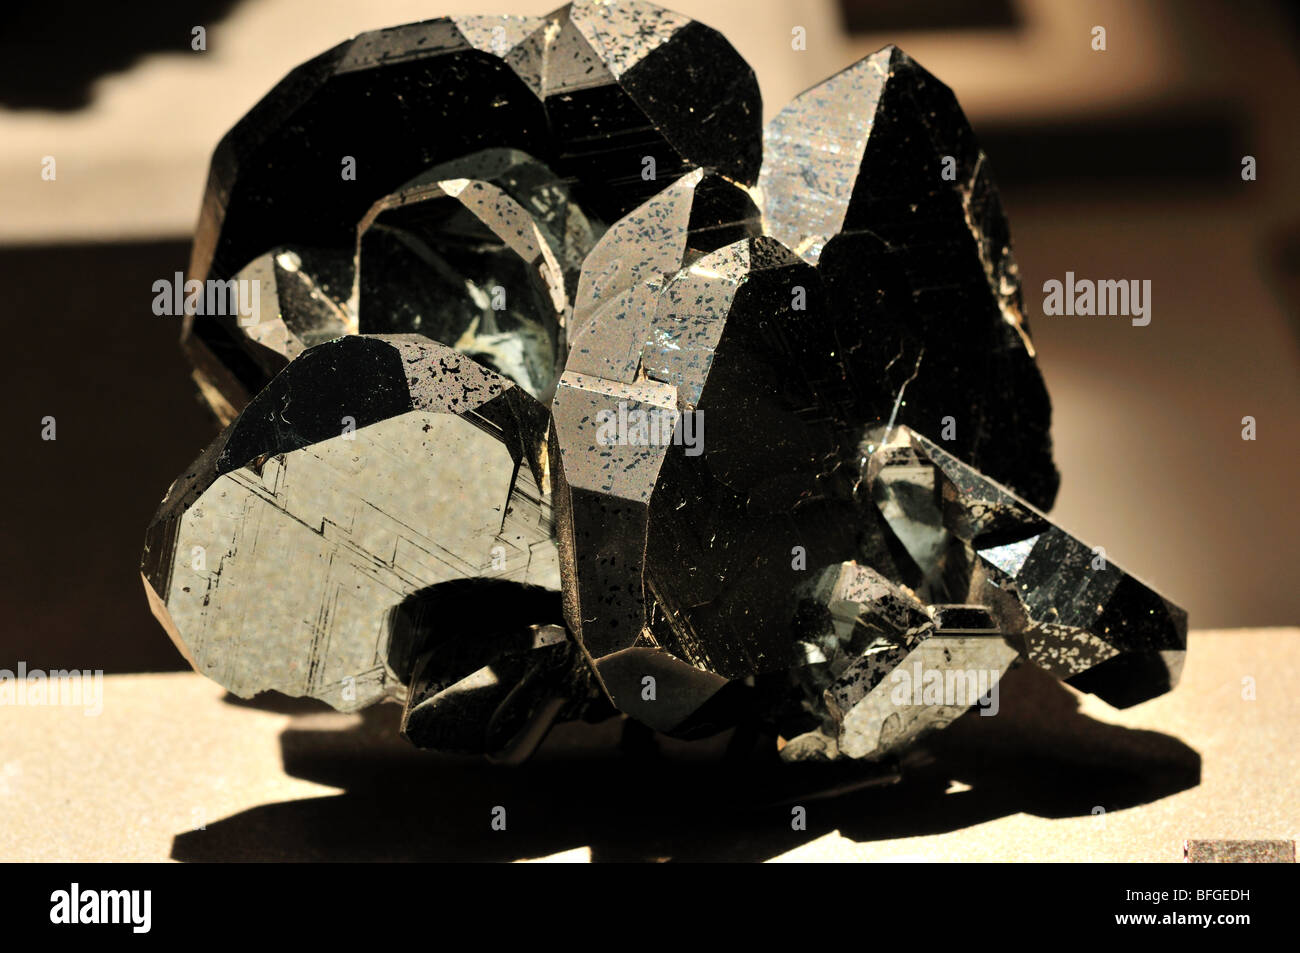 Hematite, iron oxide FeO2. Stock Photo